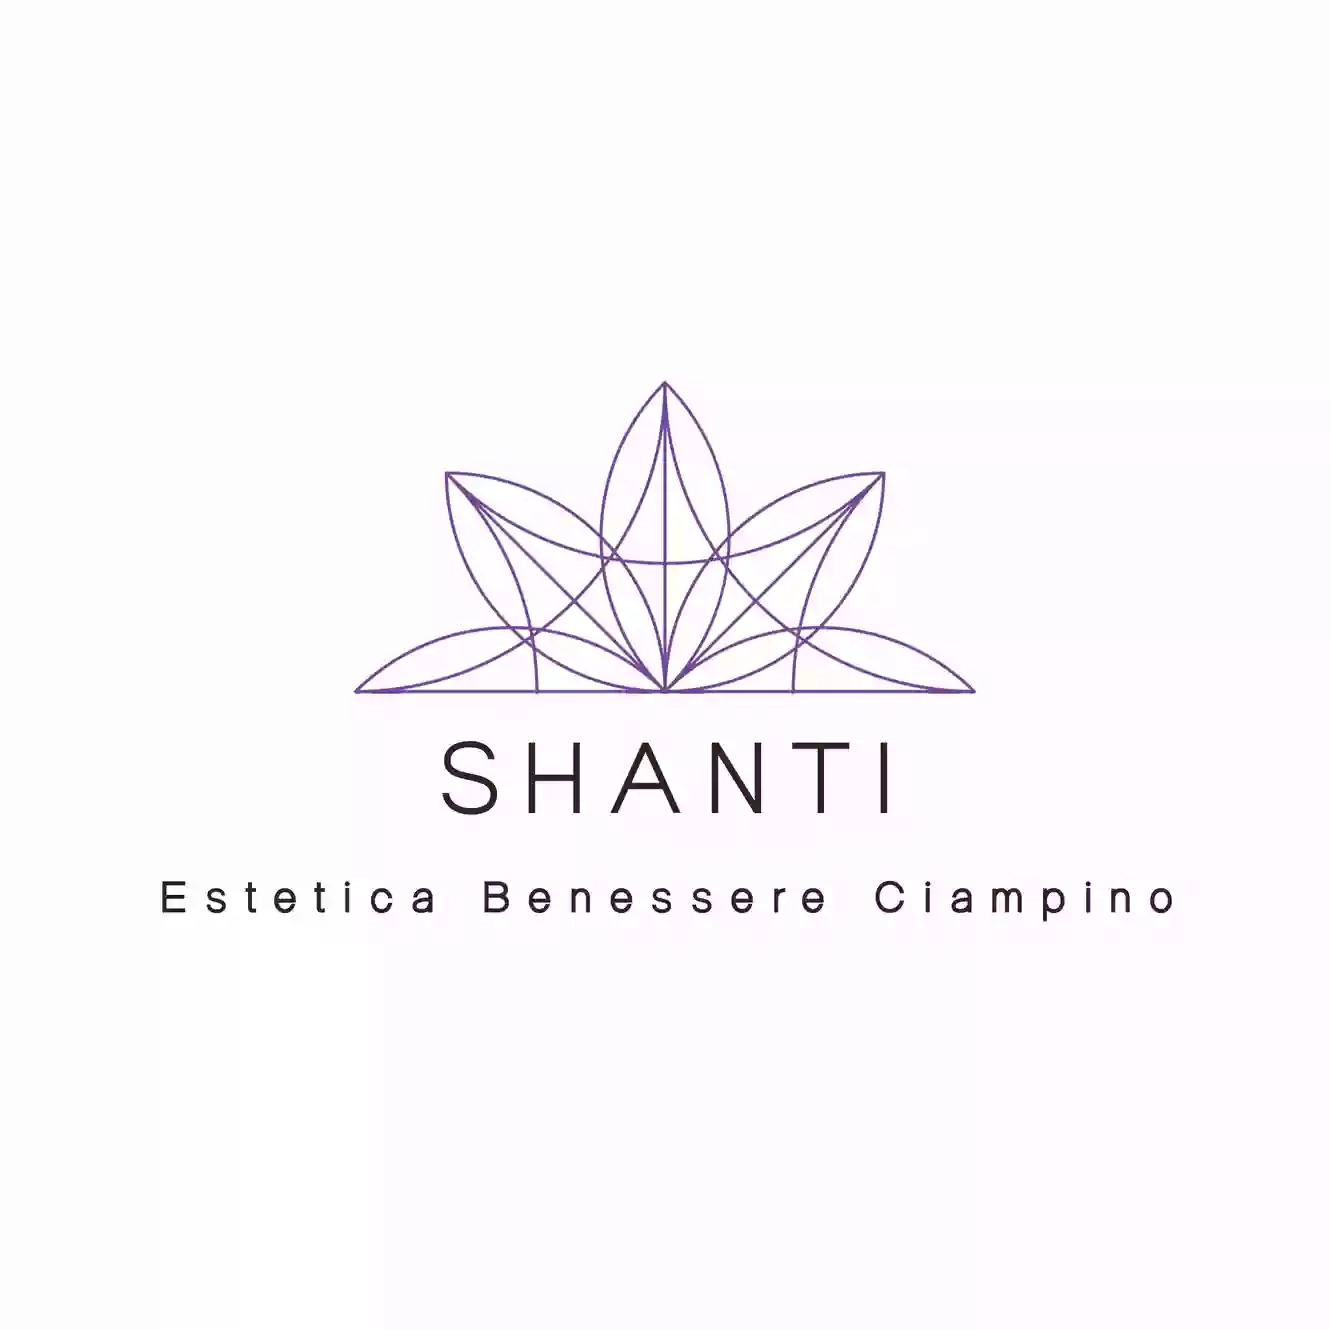 Shanti Centro Estetico Benessere Ciampino